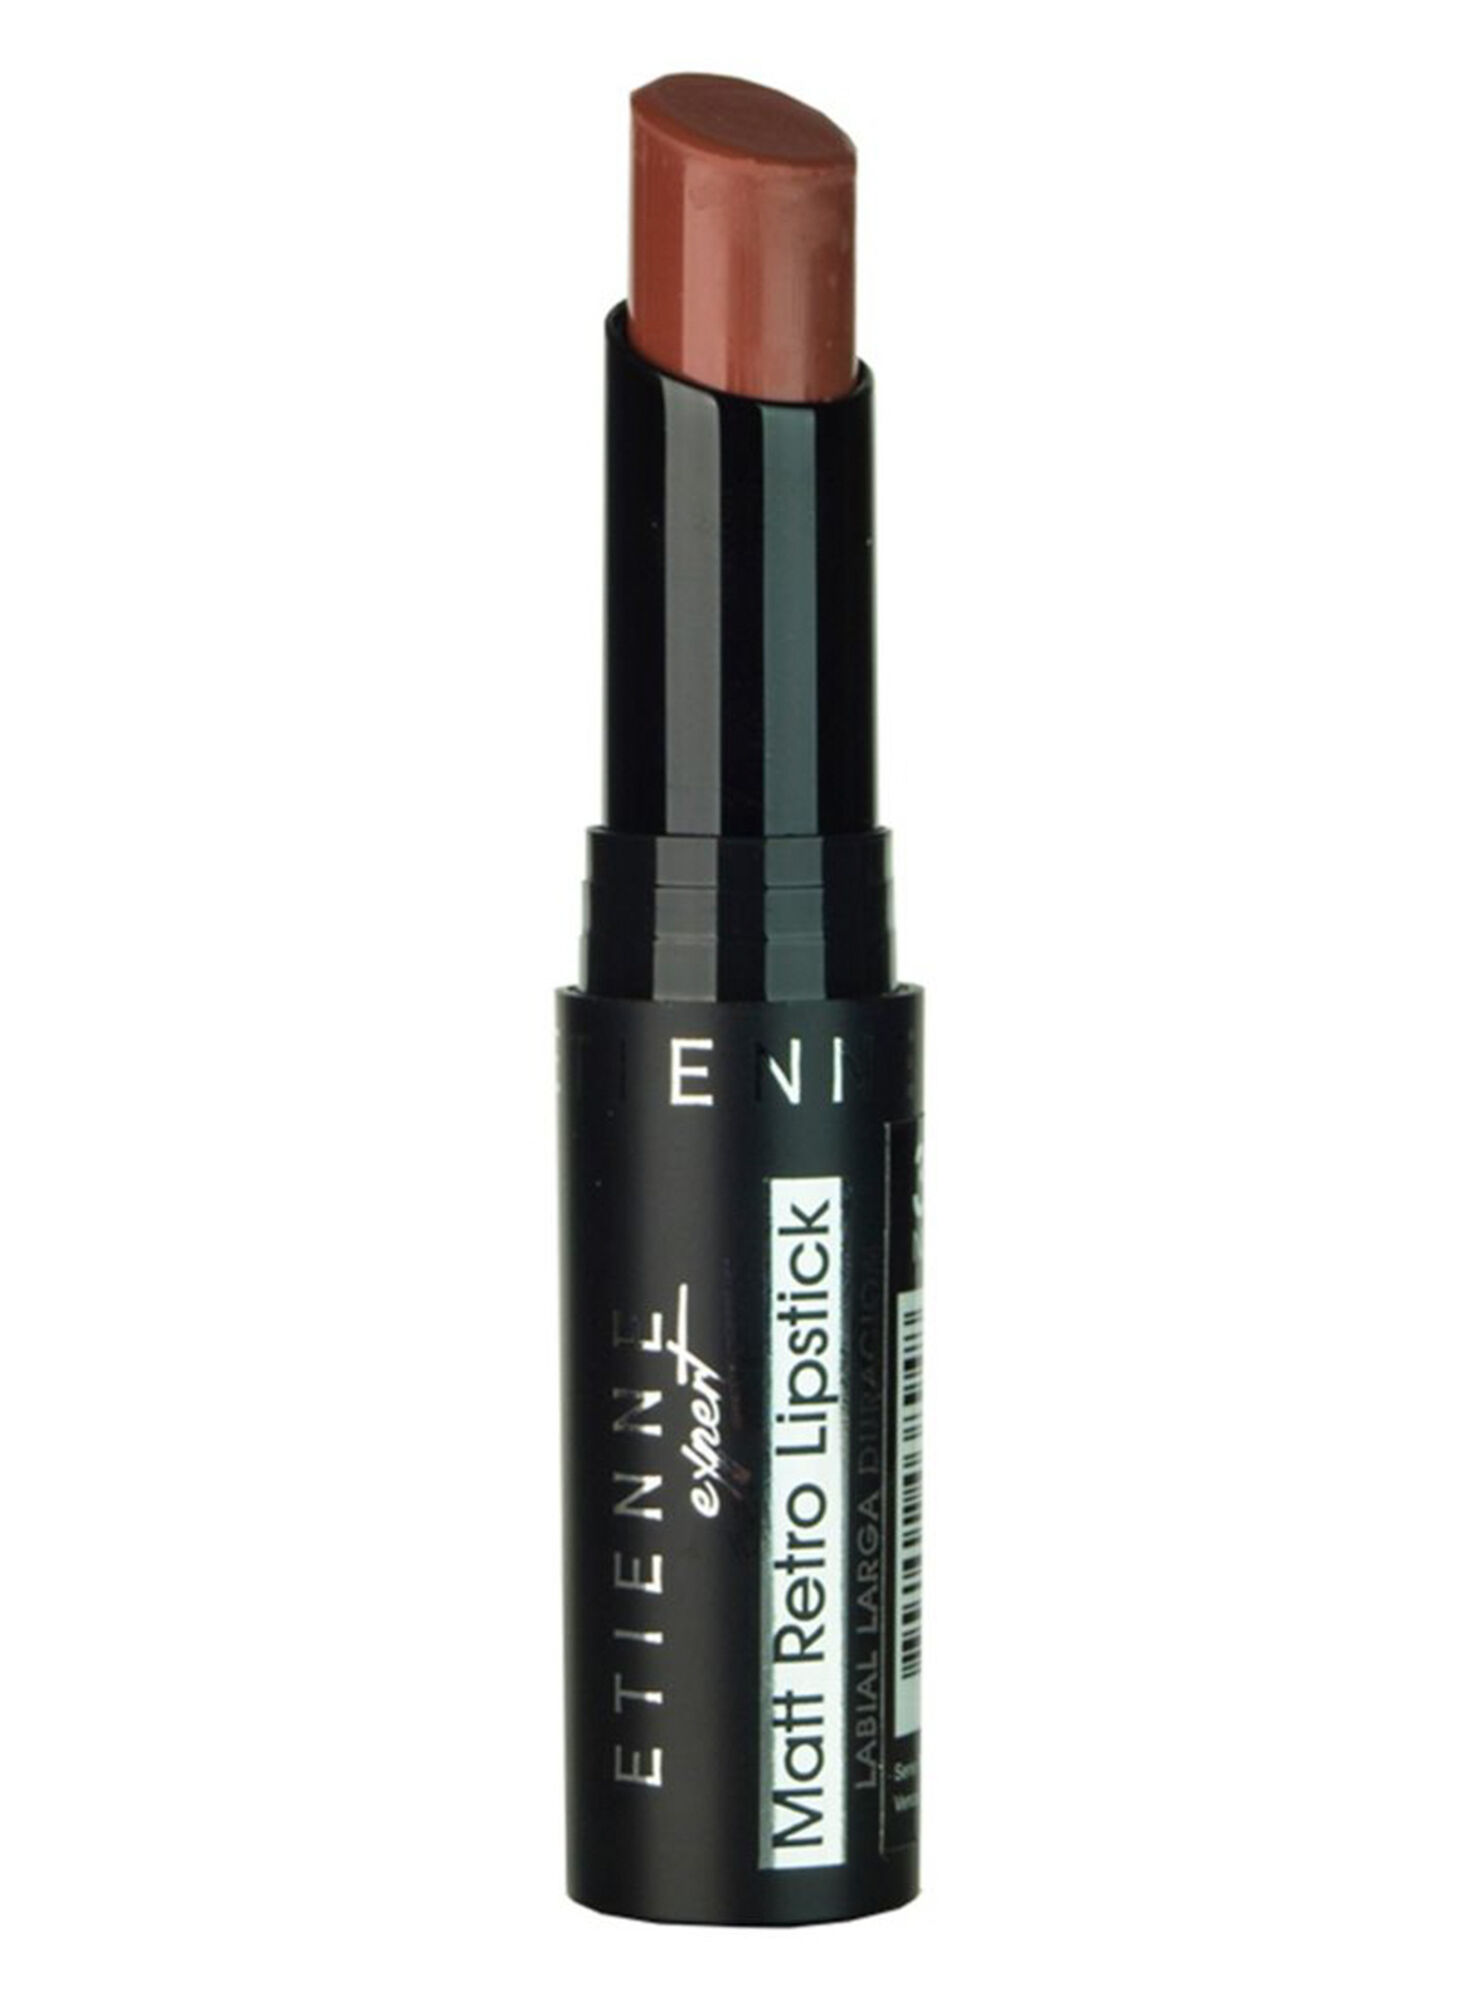 Labial Matt Retro Lipstick Nude 39 Etienne - Maquillaje Labios | Paris.cl